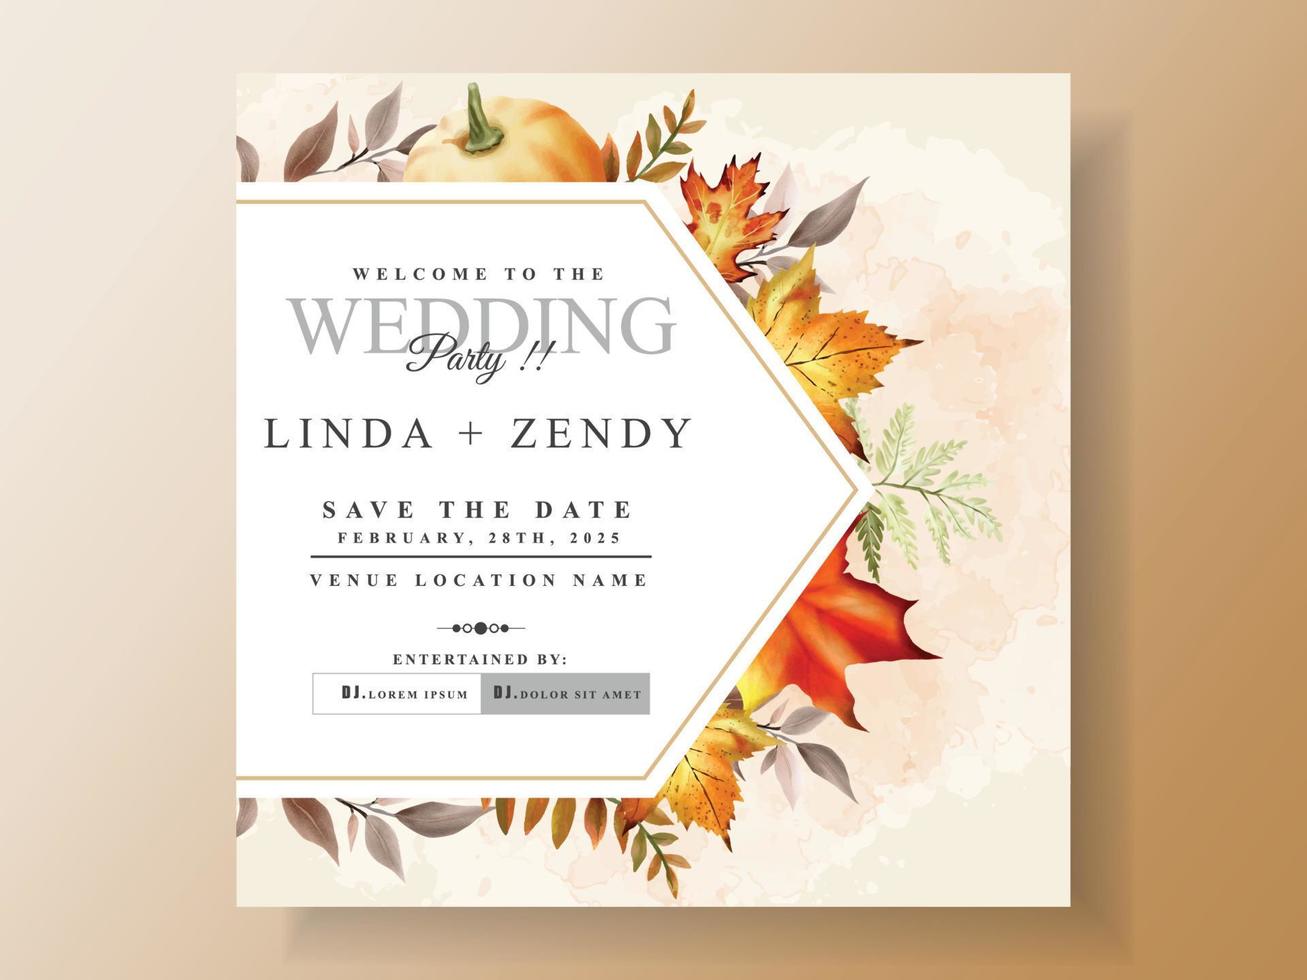 modelo de cartão de convite de casamento com folhas de outono desenhadas à mão vetor